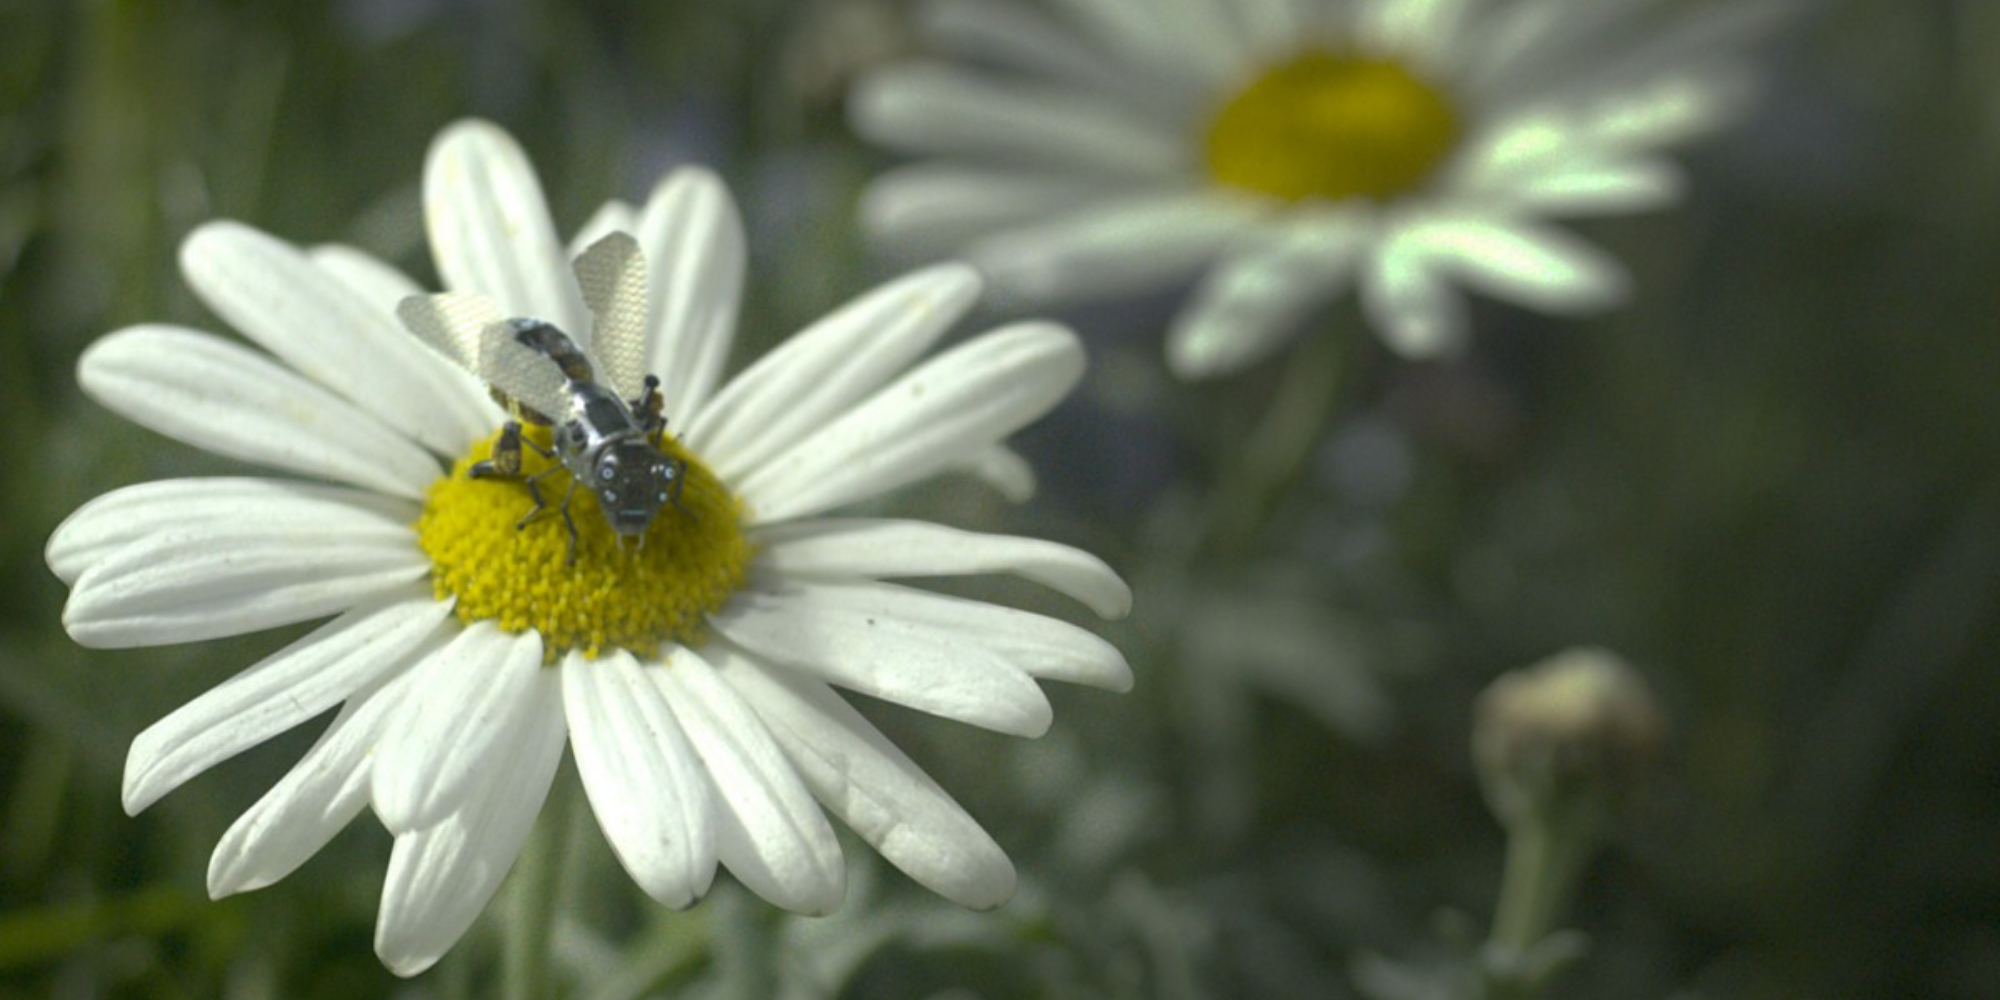 nano abelha blackmirrorhatedinthenation sentada em uma flor